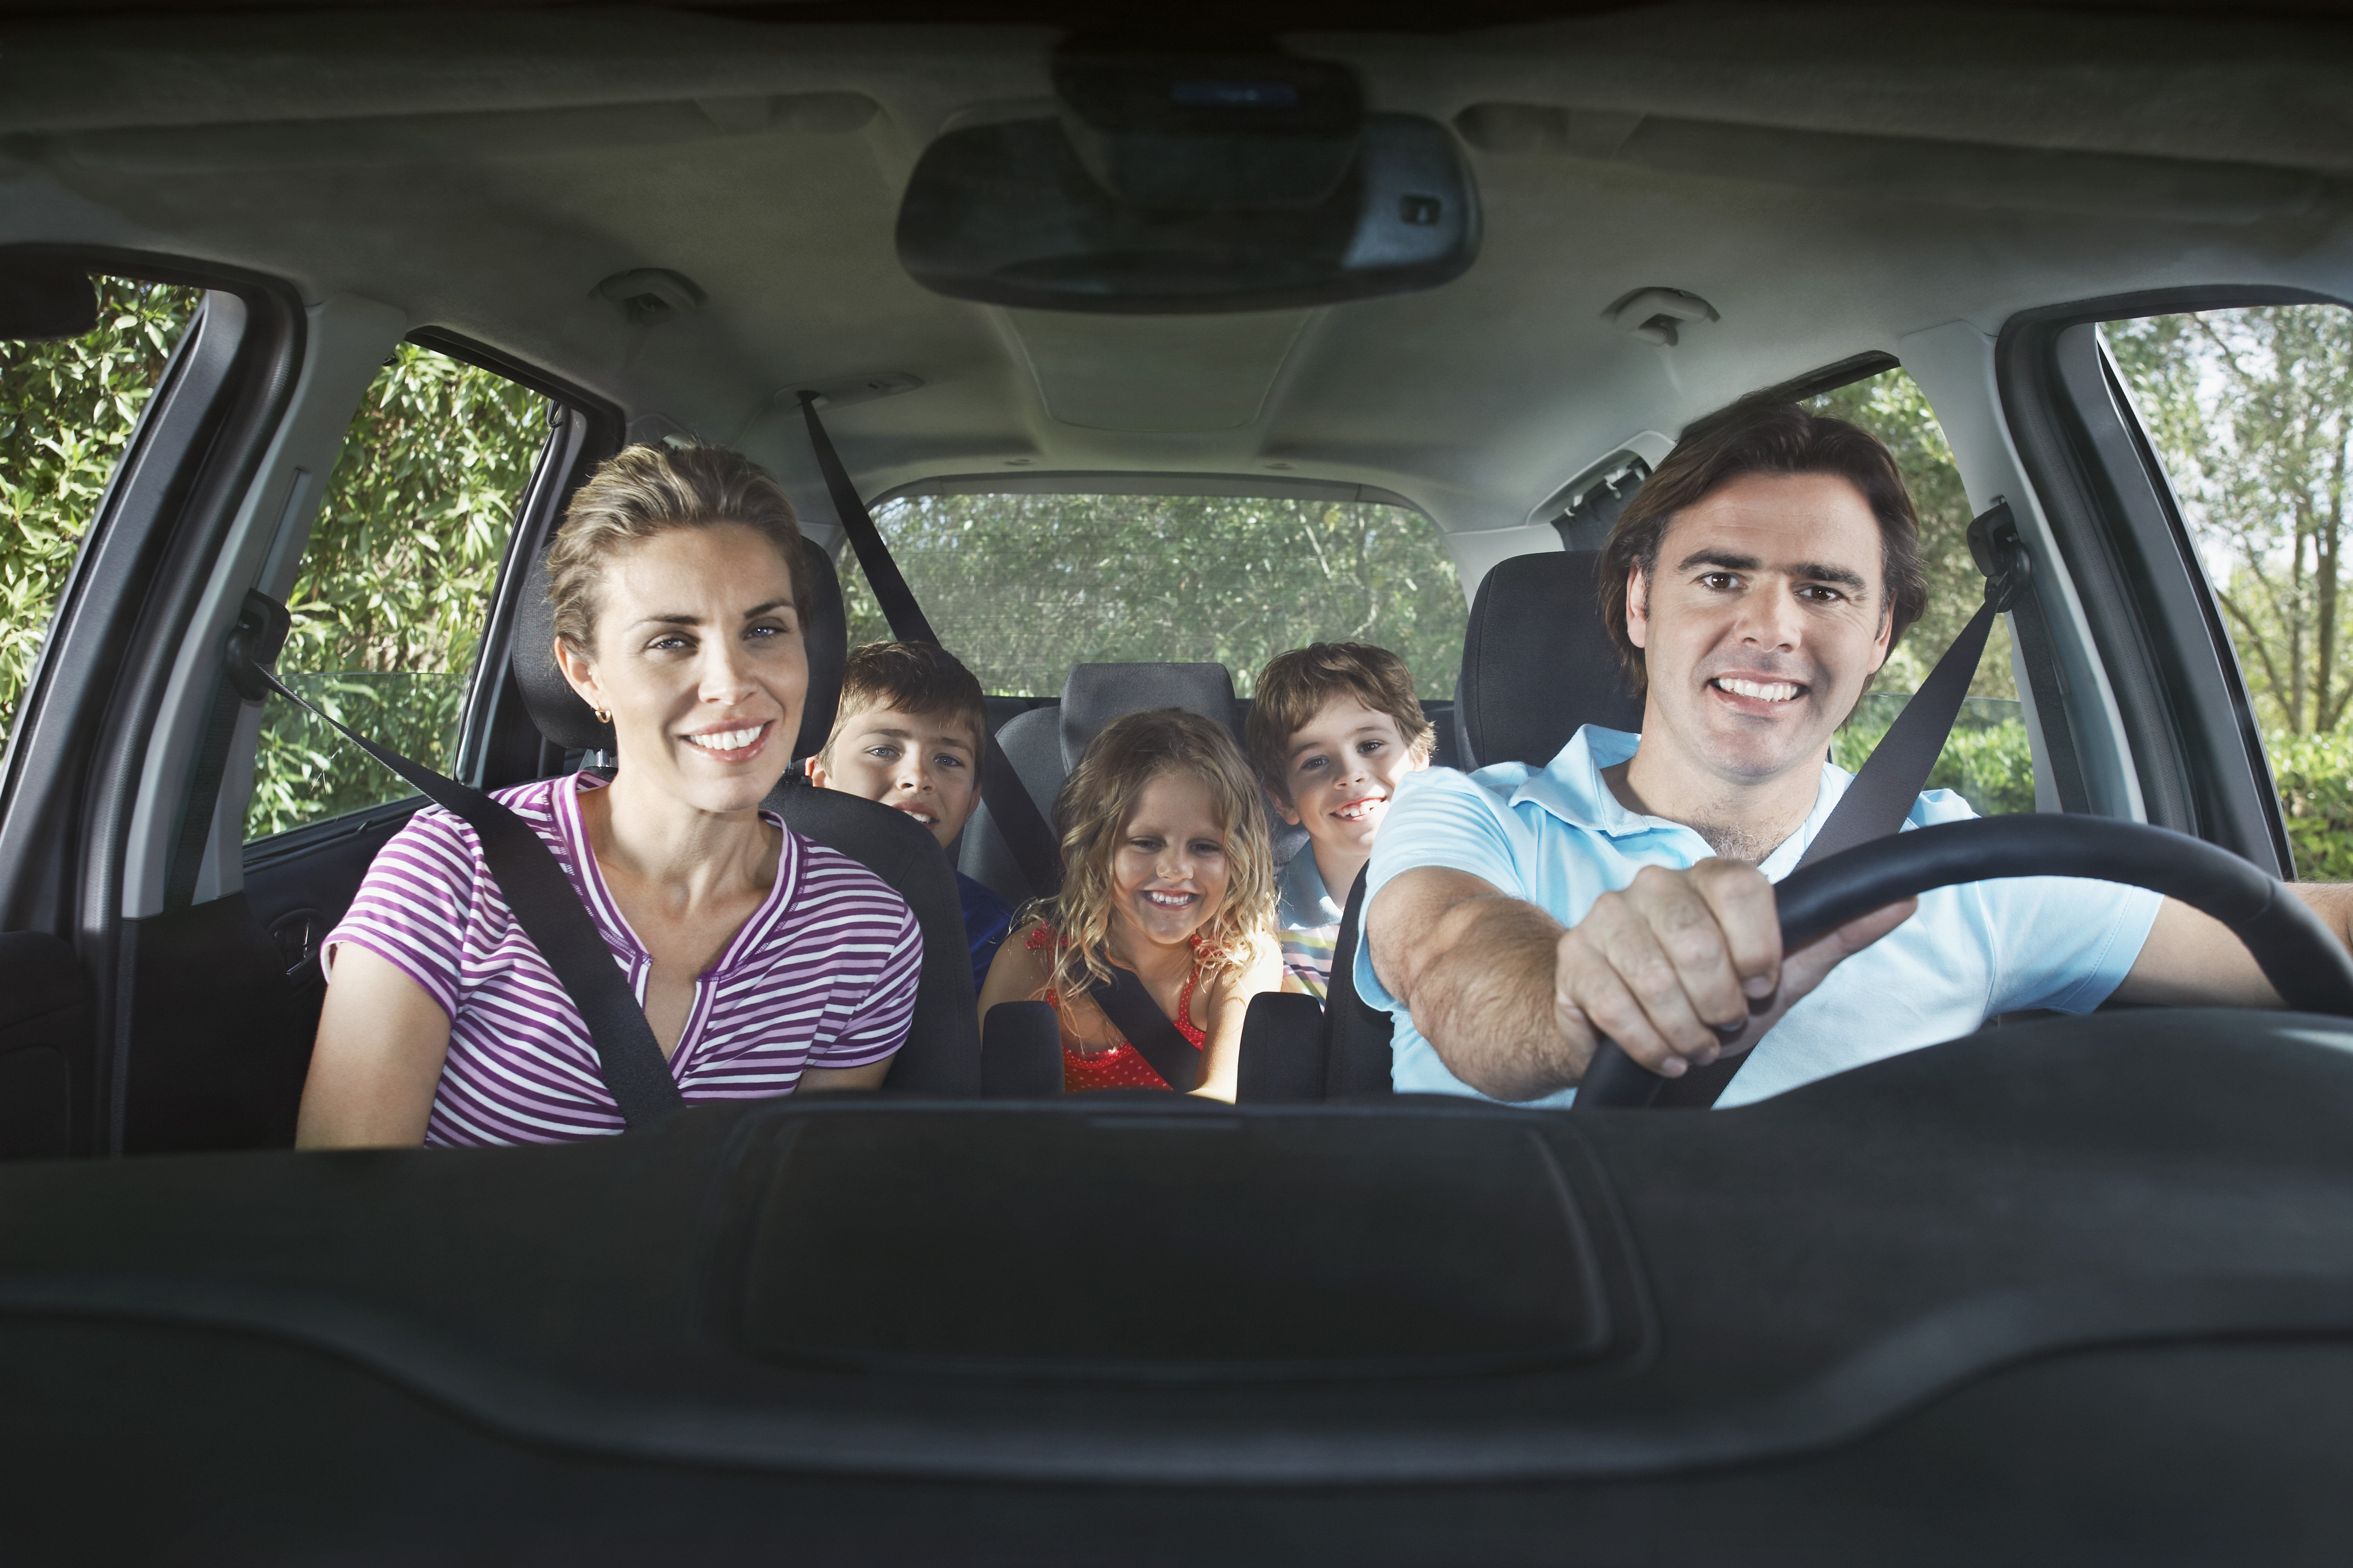 Wife trip. Человек едет в машине. Семья в машине. Люди едут в автомобиле. Счастливая семья на автомобиле.